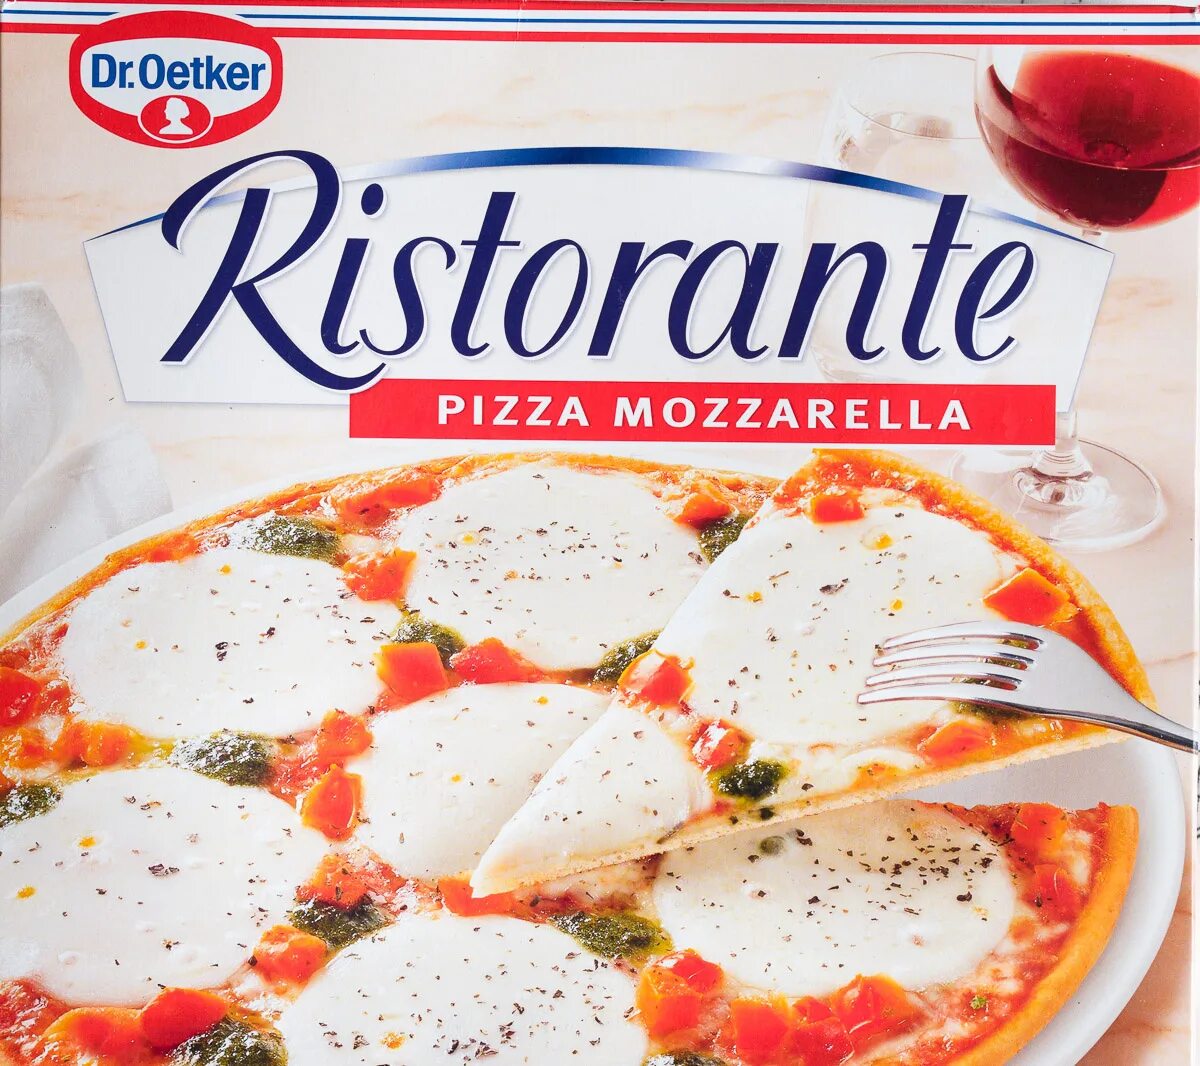 Пицца моцарелла. Пицца Ристоранте моцарелла. Dr. Oetker замороженная пицца Ristorante моцарелла 335 г. Пицца моцарелла Jojo. Пицца моцарелла пицца моцарелла рела рела.